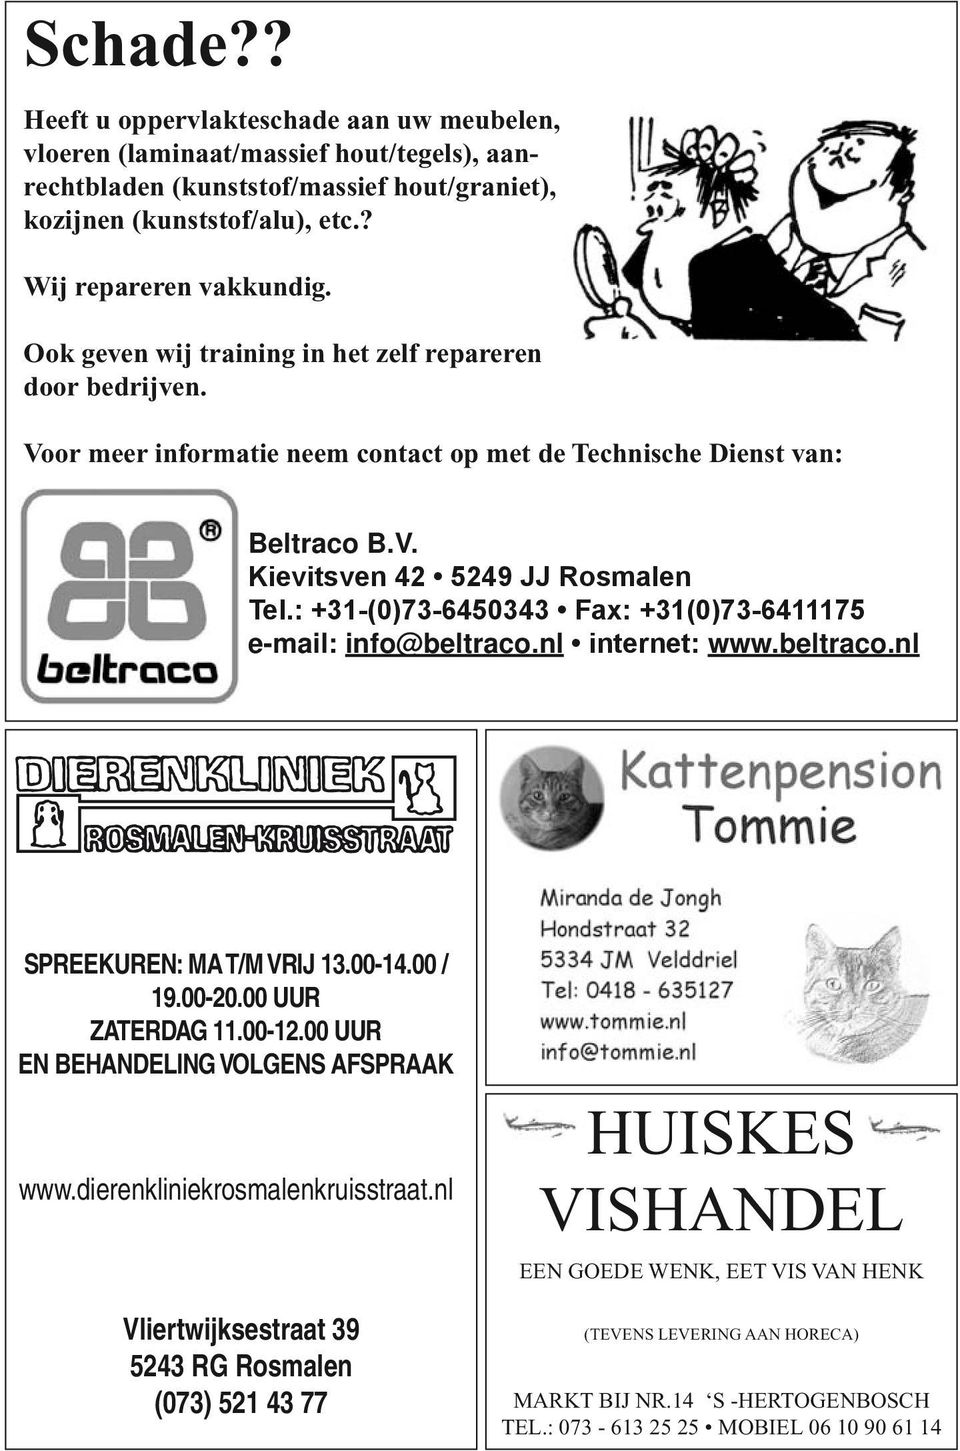 : +31-(0)73-6450343 Fax: +31(0)73-6411175 e-mail: info@beltraco.nl internet: www.beltraco.nl Spreekuren: ma t/m vrij 13.00-14.00 / 19.00-20.00 uur zaterdag 11.00-12.